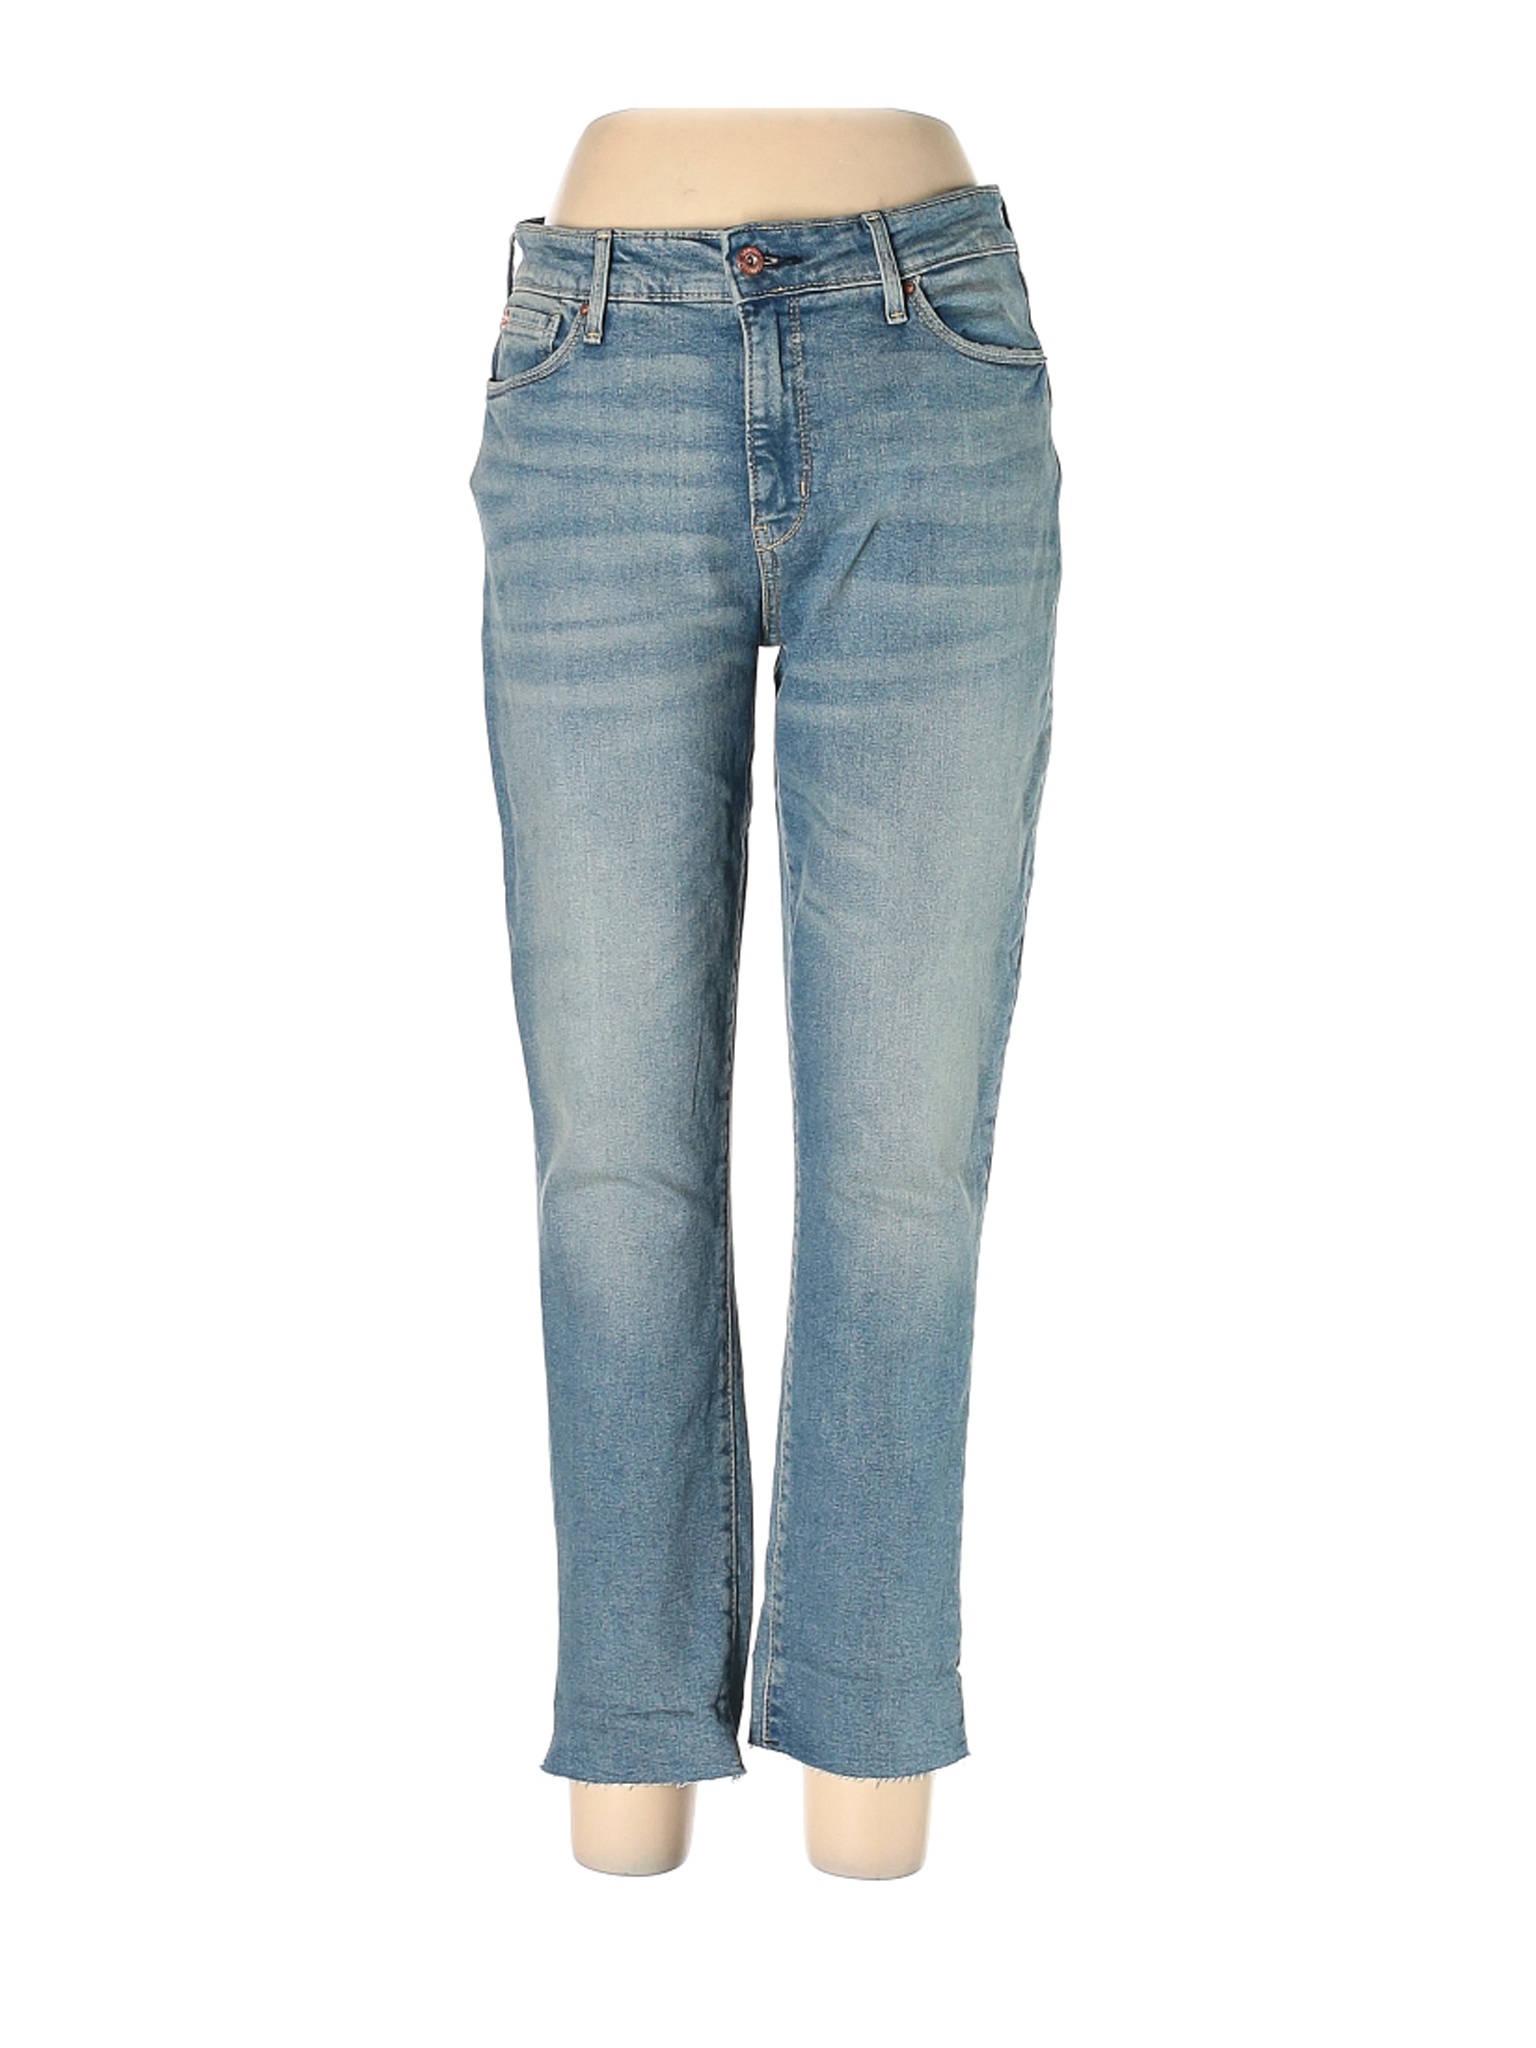 Denizen from Levi's Women Blue Jeans 10 | eBay